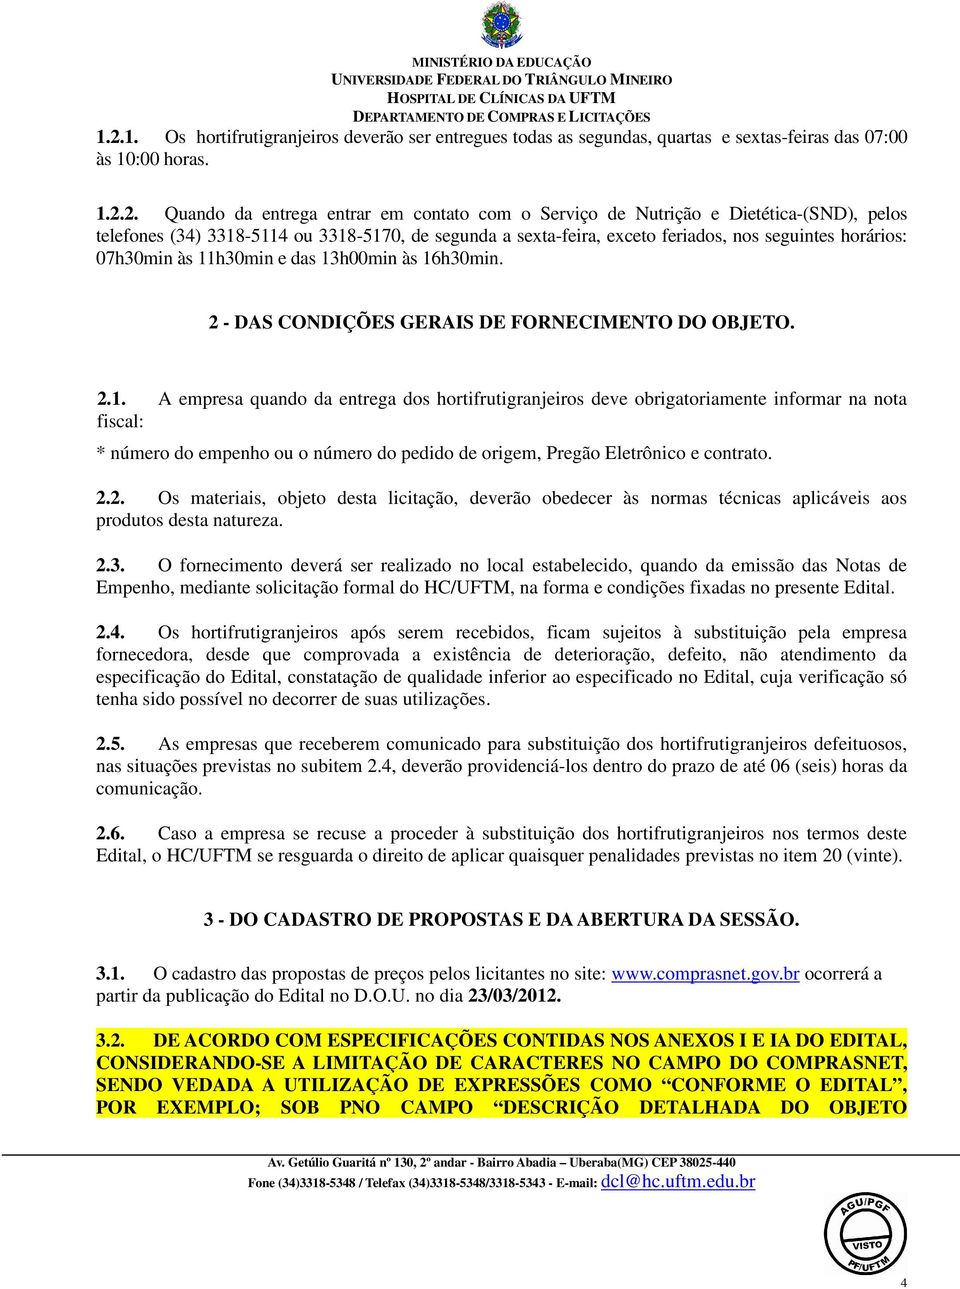 2 - DAS CONDIÇÕES GERAIS DE FORNECIMENTO DO OBJETO. 2.1.